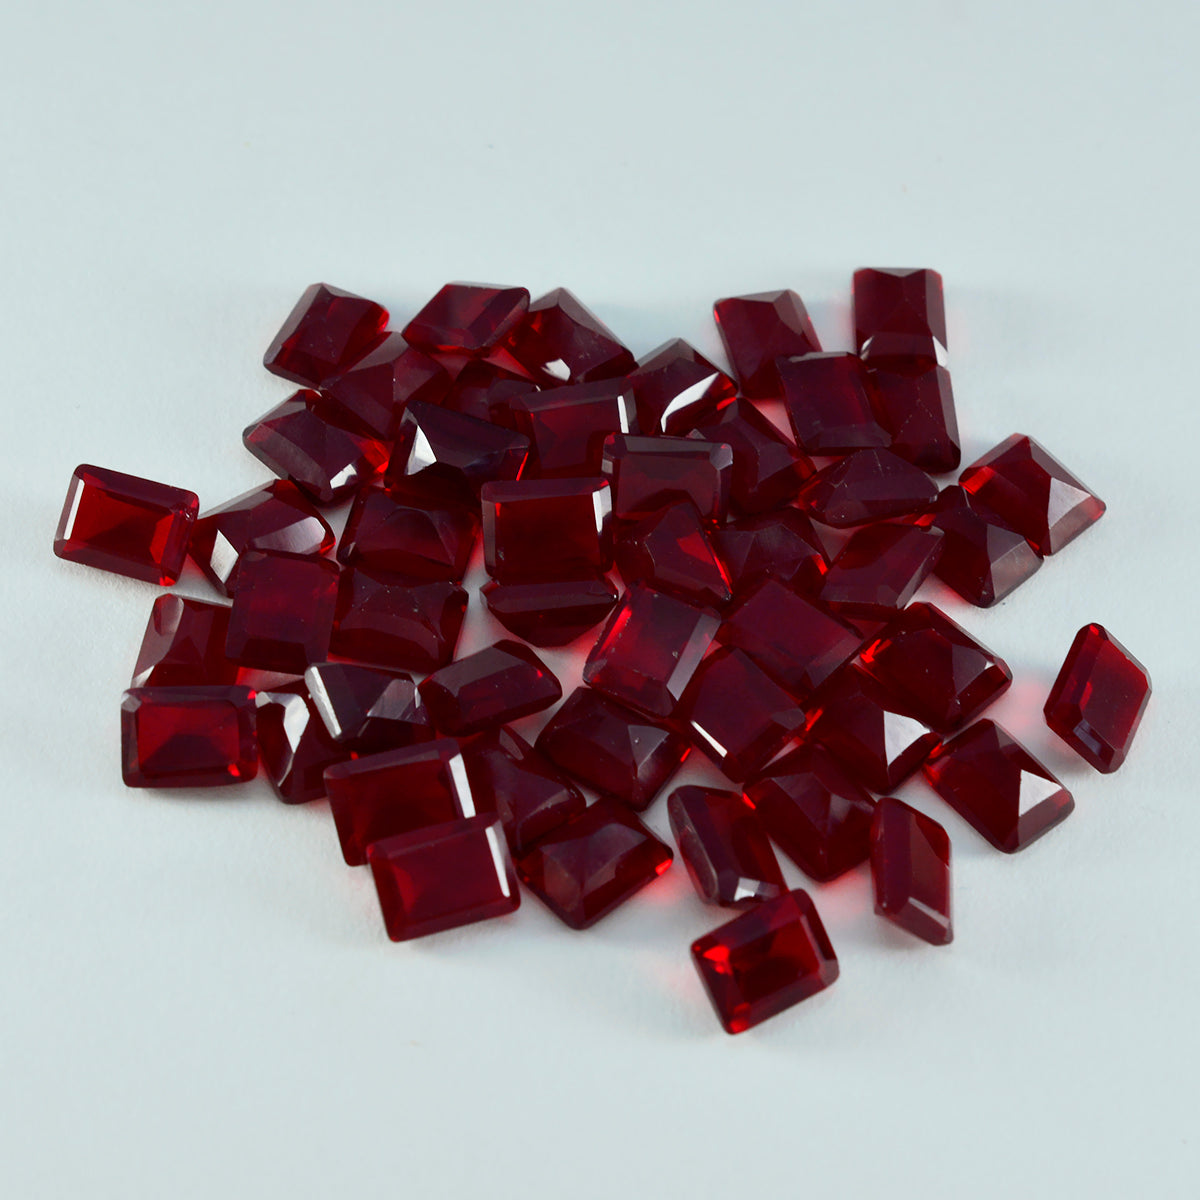 Riyogems 1 Stück roter Rubin mit CZ, facettiert, 5 x 7 mm, achteckige Form, gut aussehender Qualitäts-Edelstein